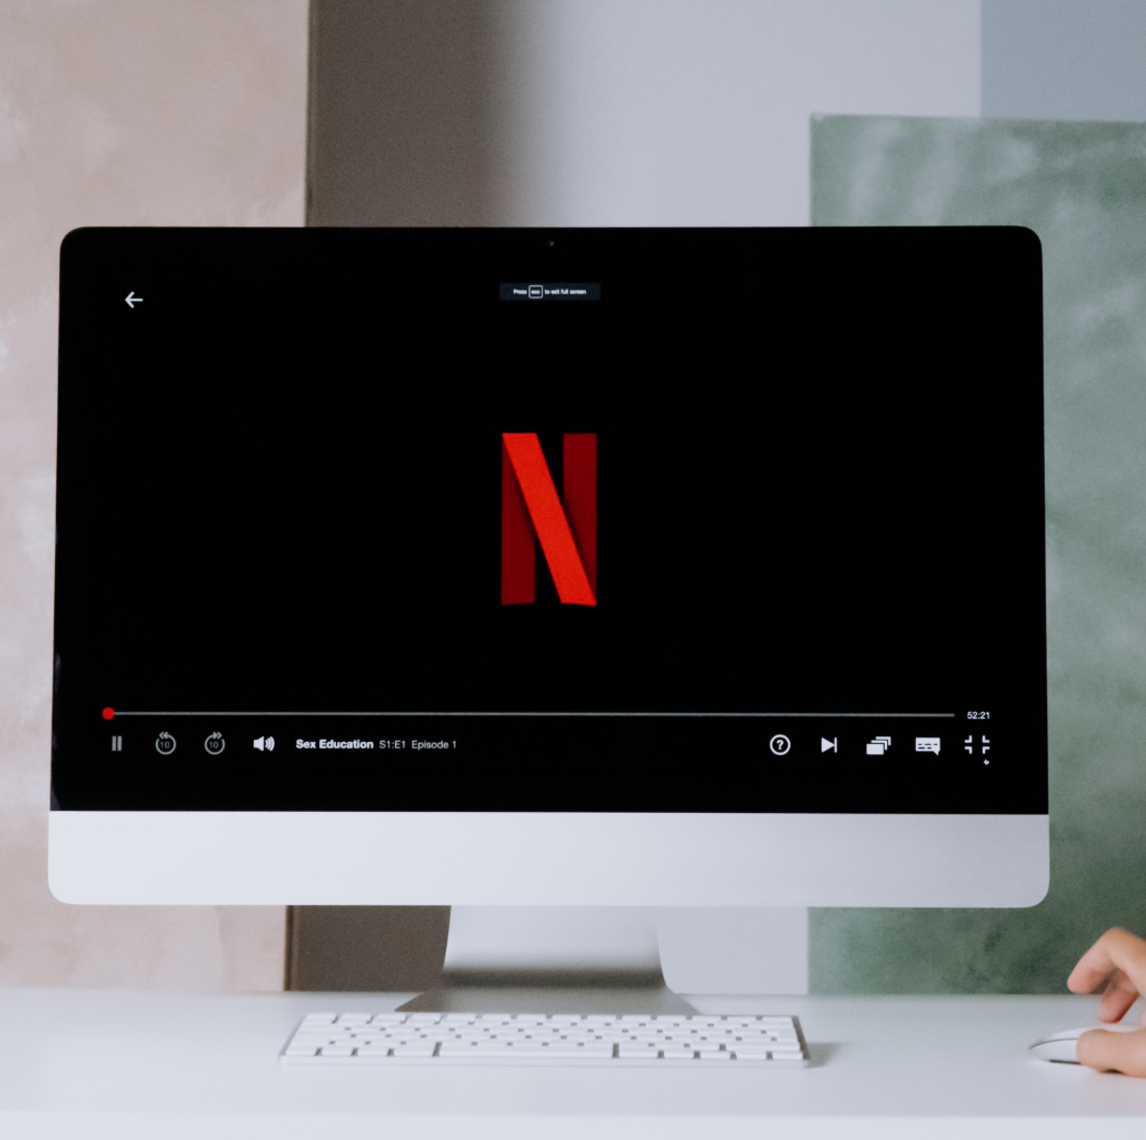 Netflix’s advantages and disadvantages